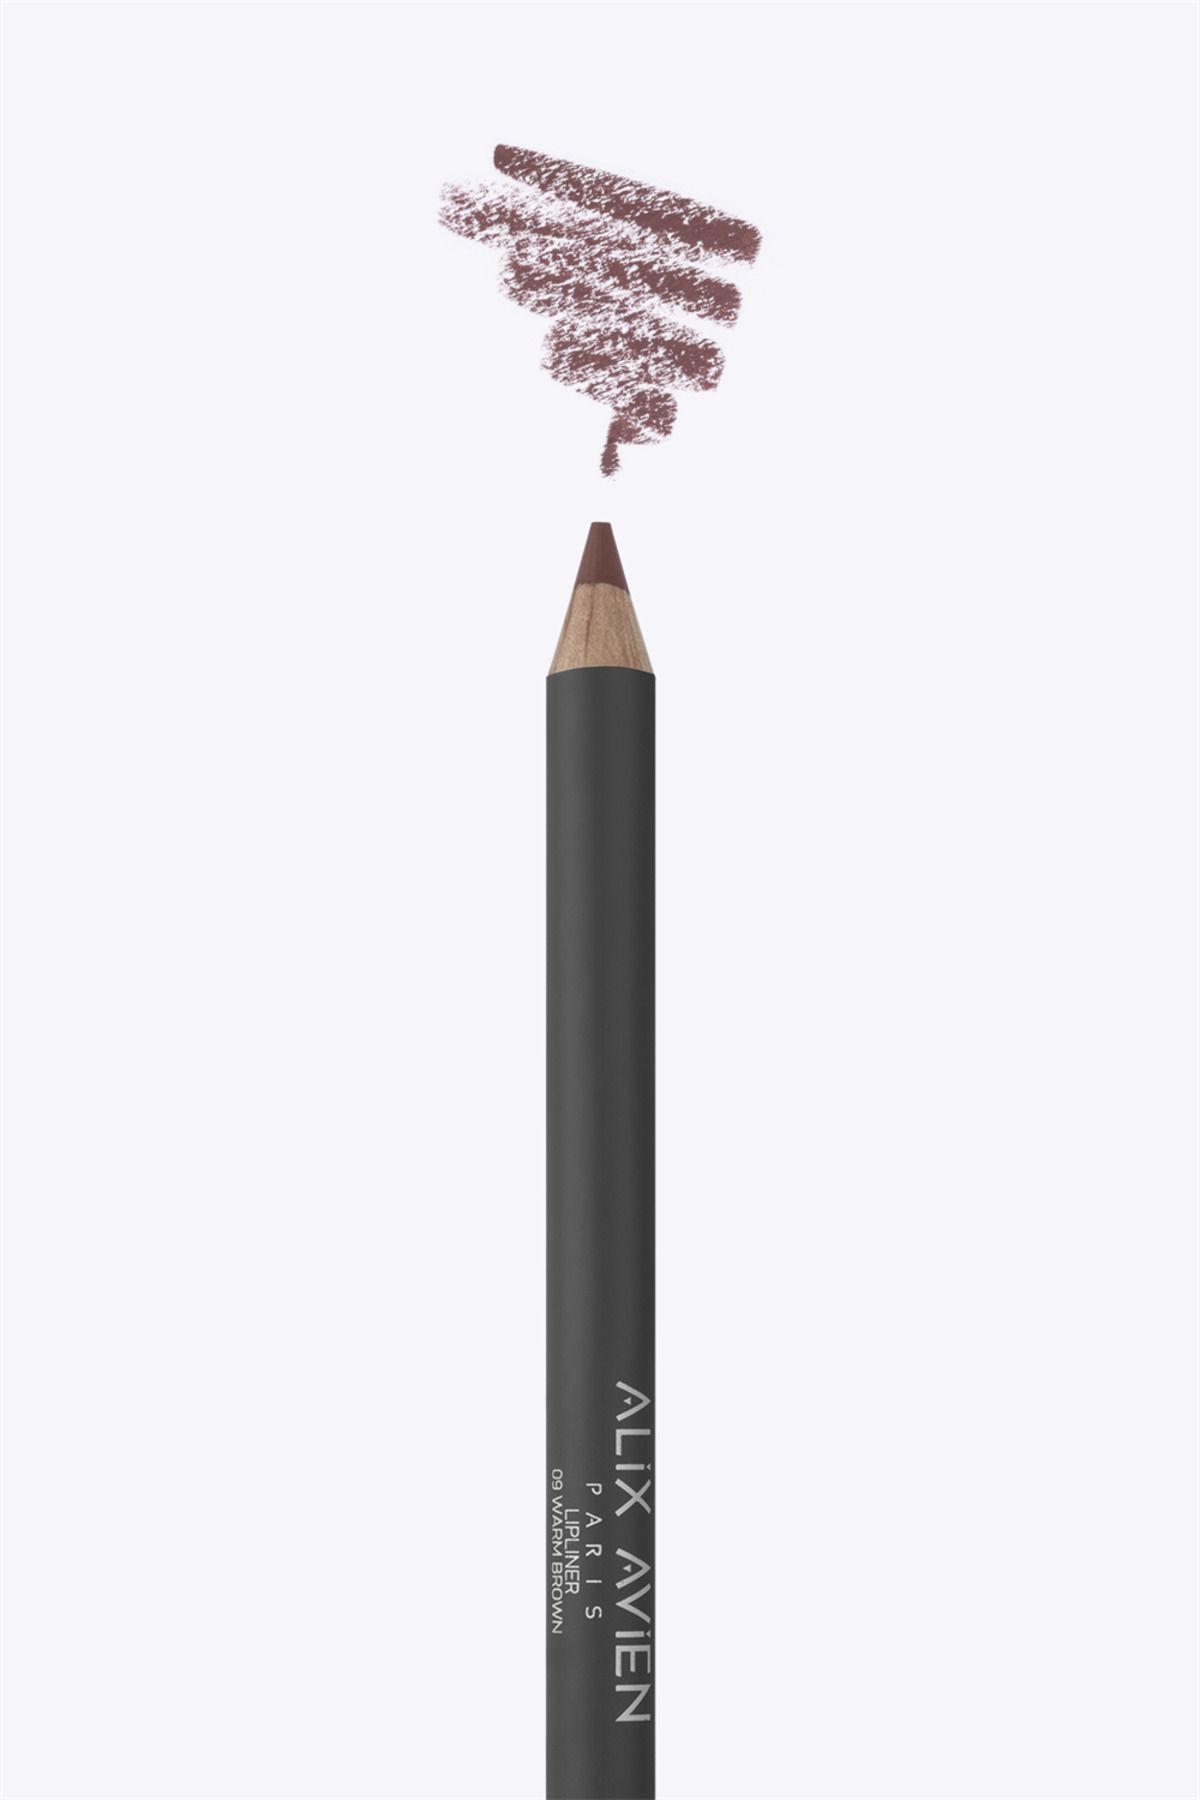 Alix Avien Dudak Kalemi Lipliner Pencil 09 Warm Brown - Dağılma Yapmayan 6 Saate Kadar Kalıcı Etki